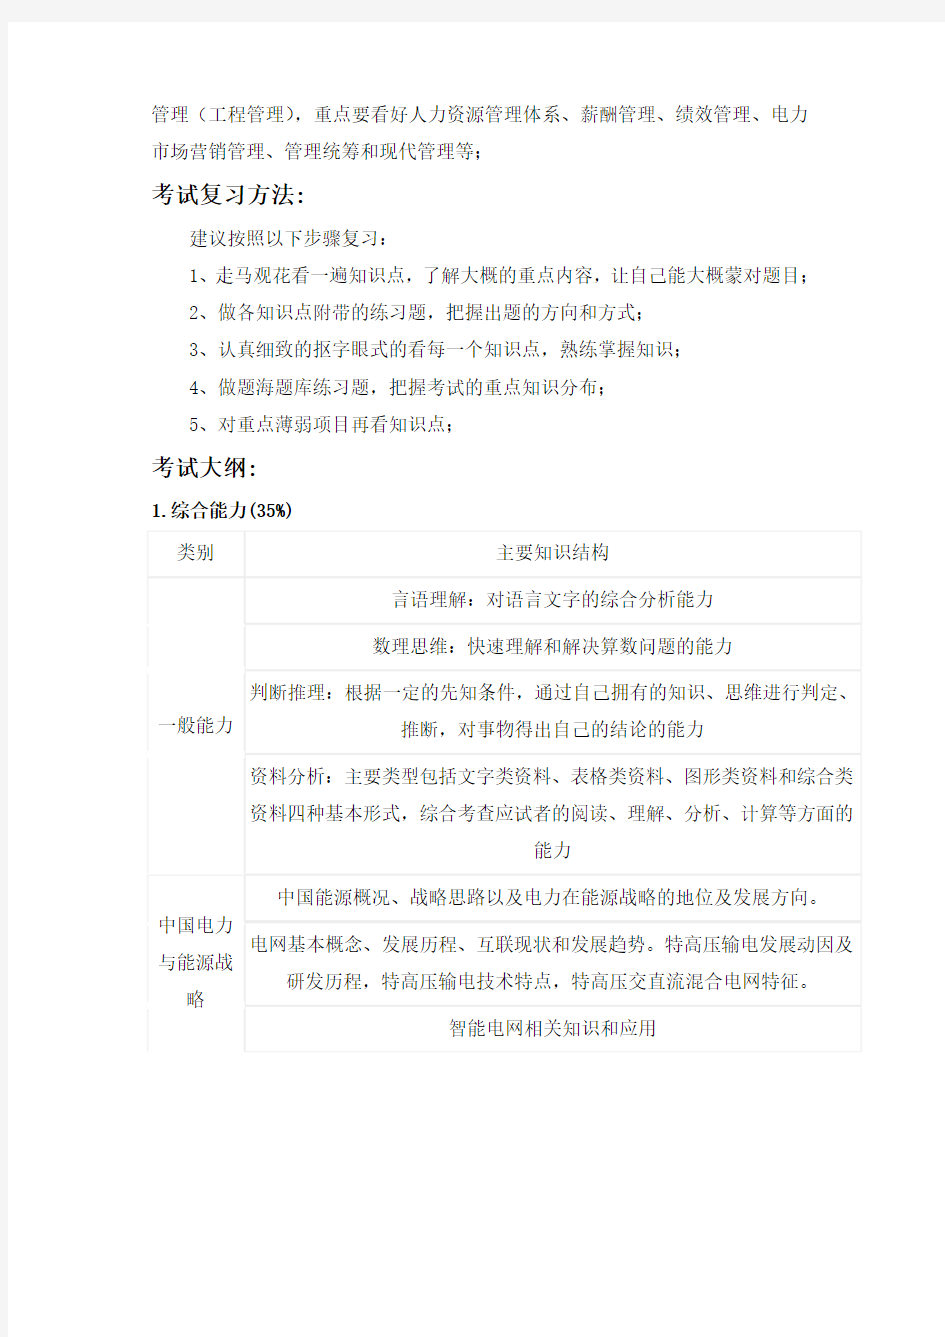 国家电网国网湖北省电力公司招聘考试笔试题内容试卷历年考试真题